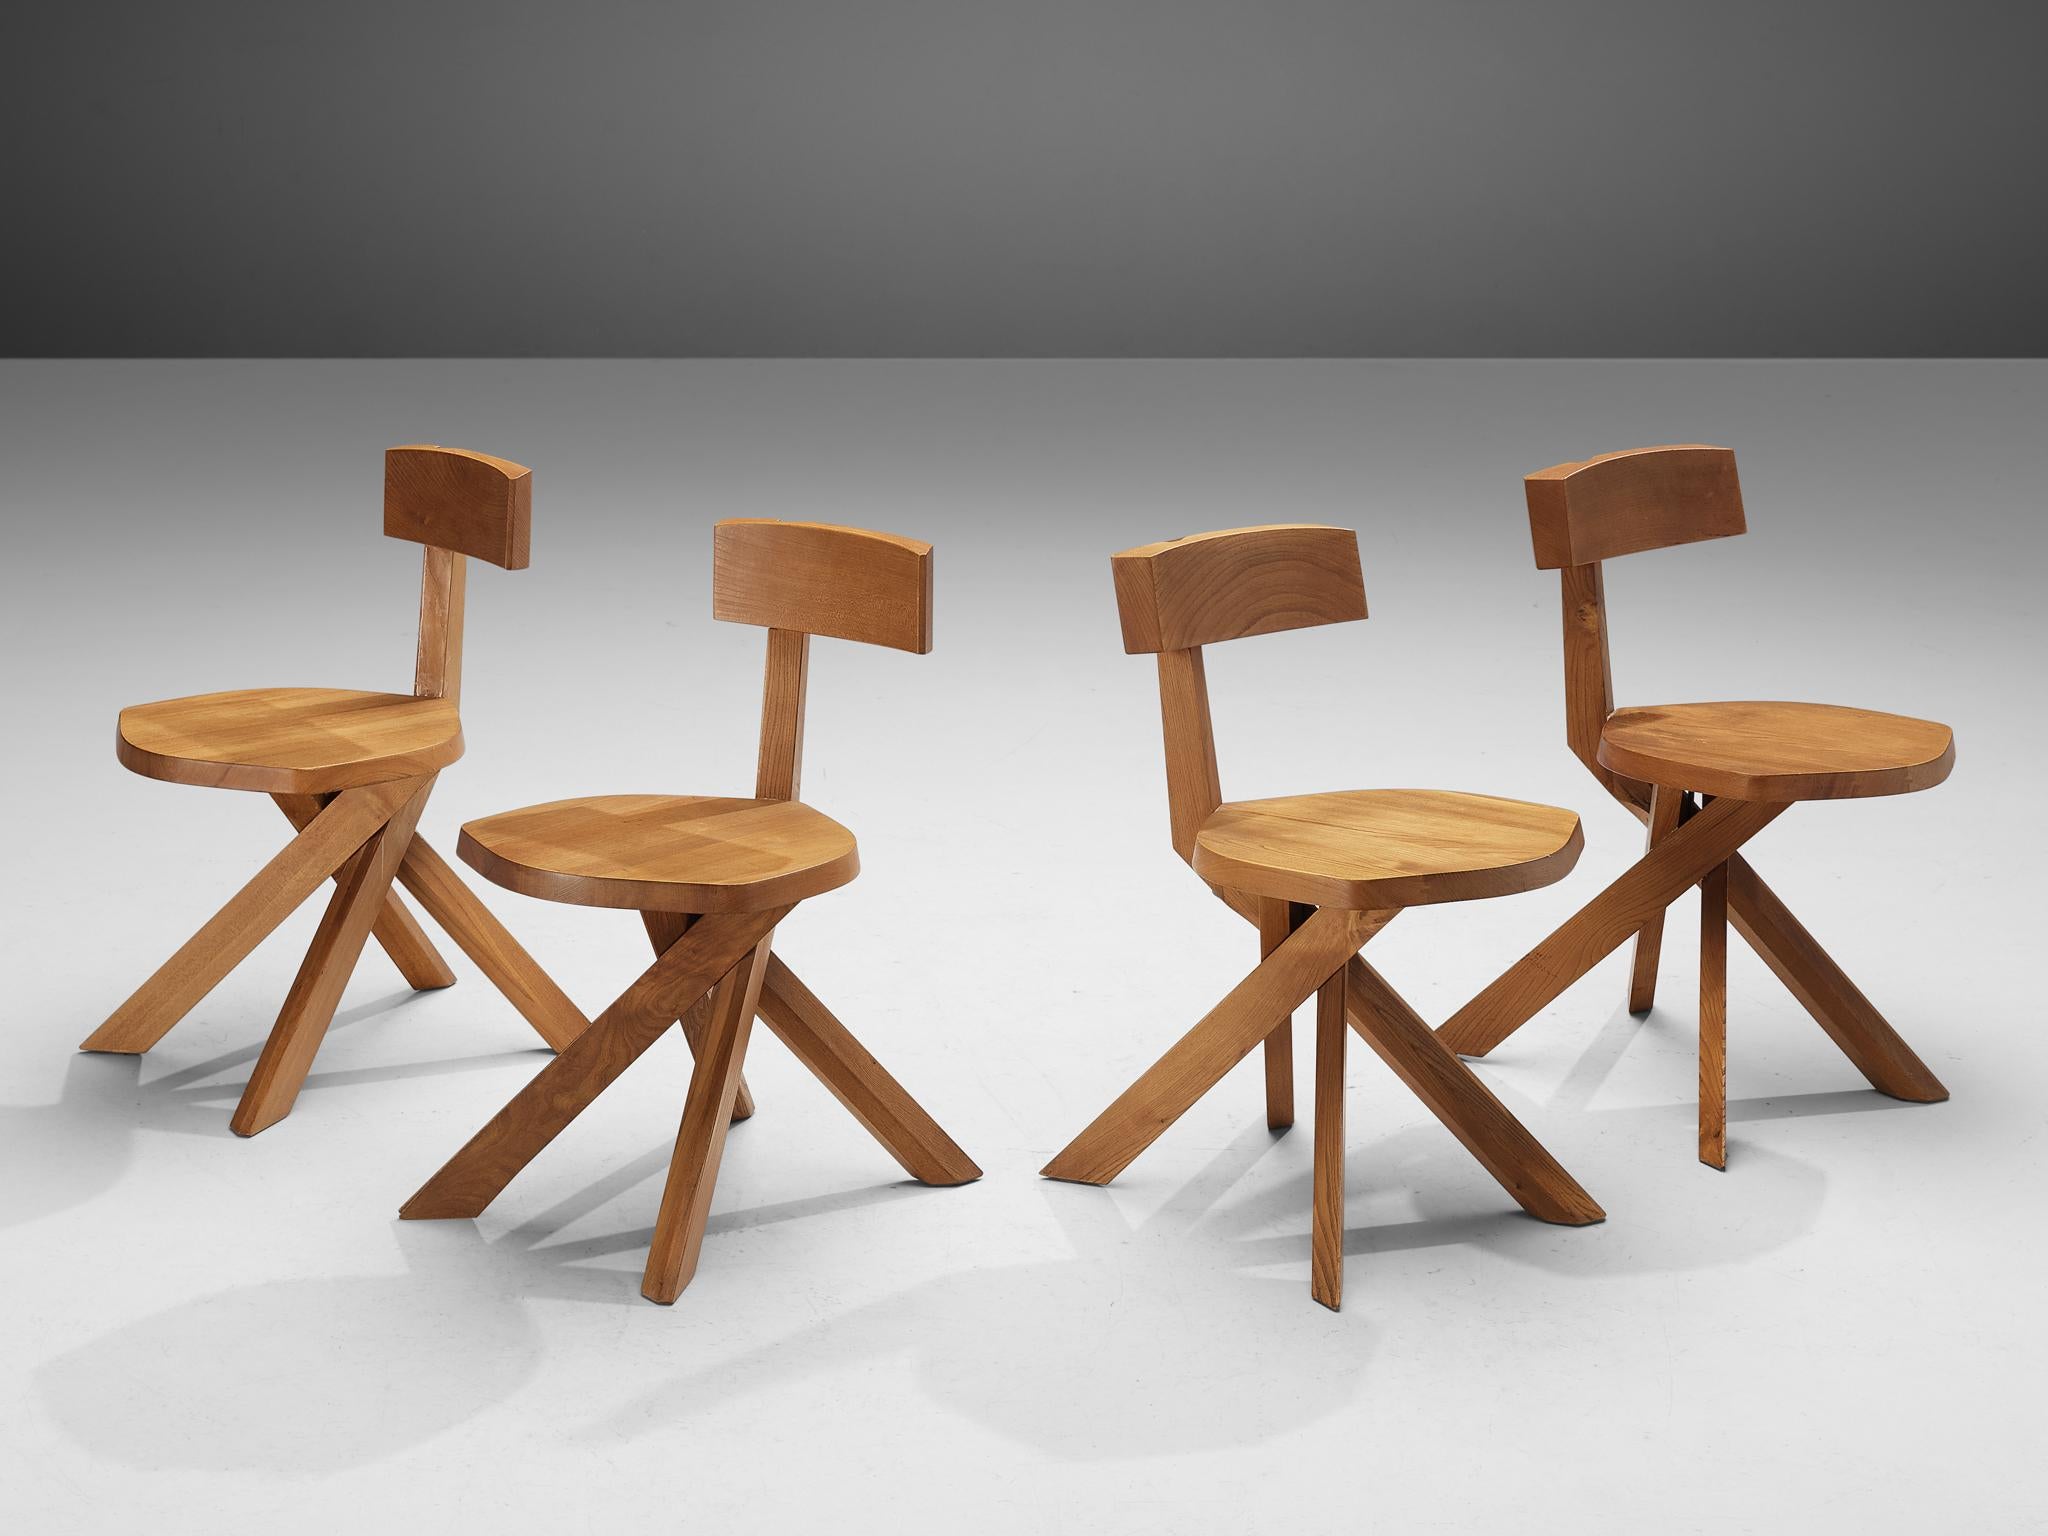 Pierre Chapo, chaises, modèle 'S34A', orme, France, circa 1973 

Cette chaise, modèle 'S34A', a été conçue par Pierre Chapo vers 1973. Cette chaise asymétrique exécutée en orme avec un dossier en forme de sept et une base torsadée est une véritable